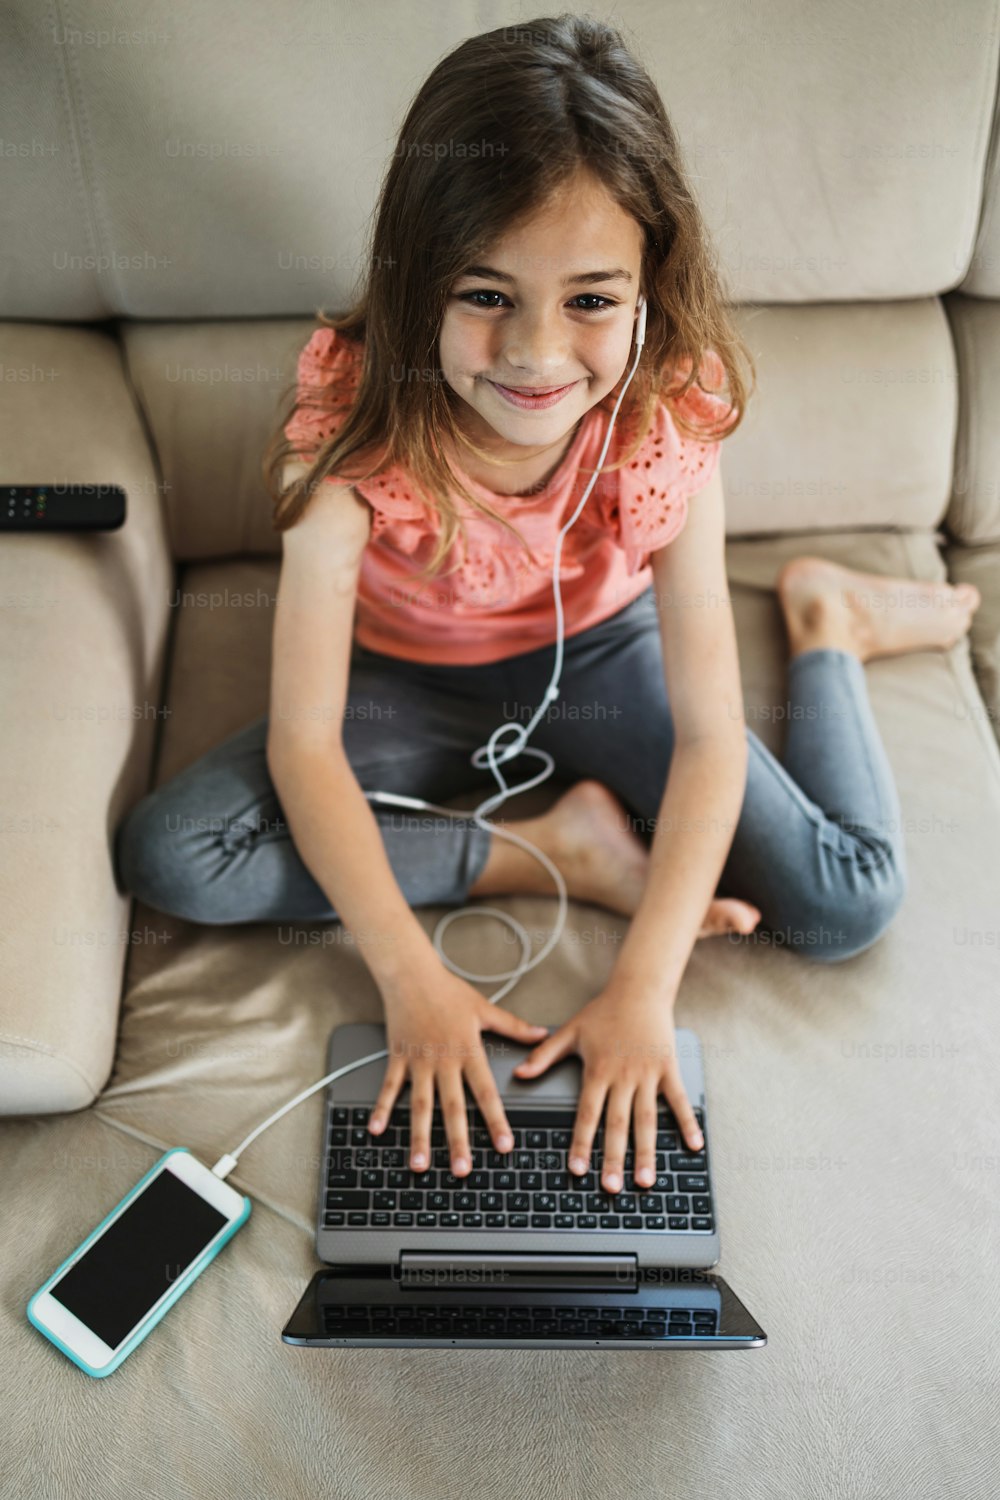 Schönes Mädchen liegt auf dem Wohnzimmersofa und benutzt einen Laptop zum Surfen, Lernen und Kommunizieren. Sie ist glücklich und lächelt.